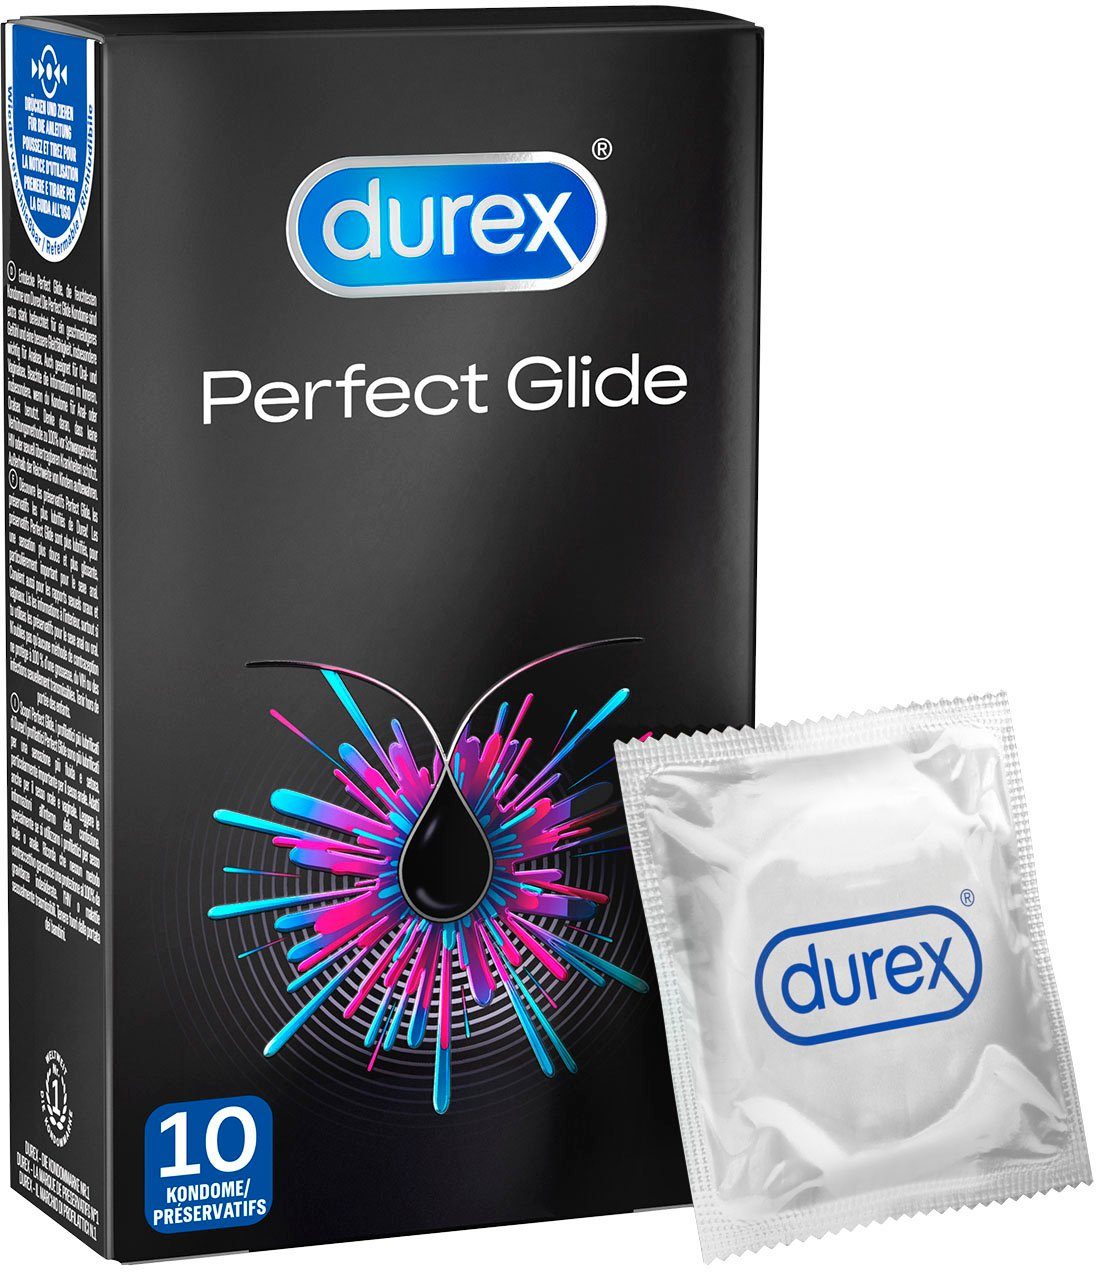 durex Kondome Perfect Glide Packung mit, 10 St., Markenkondome für  flutschiges Vergnügen